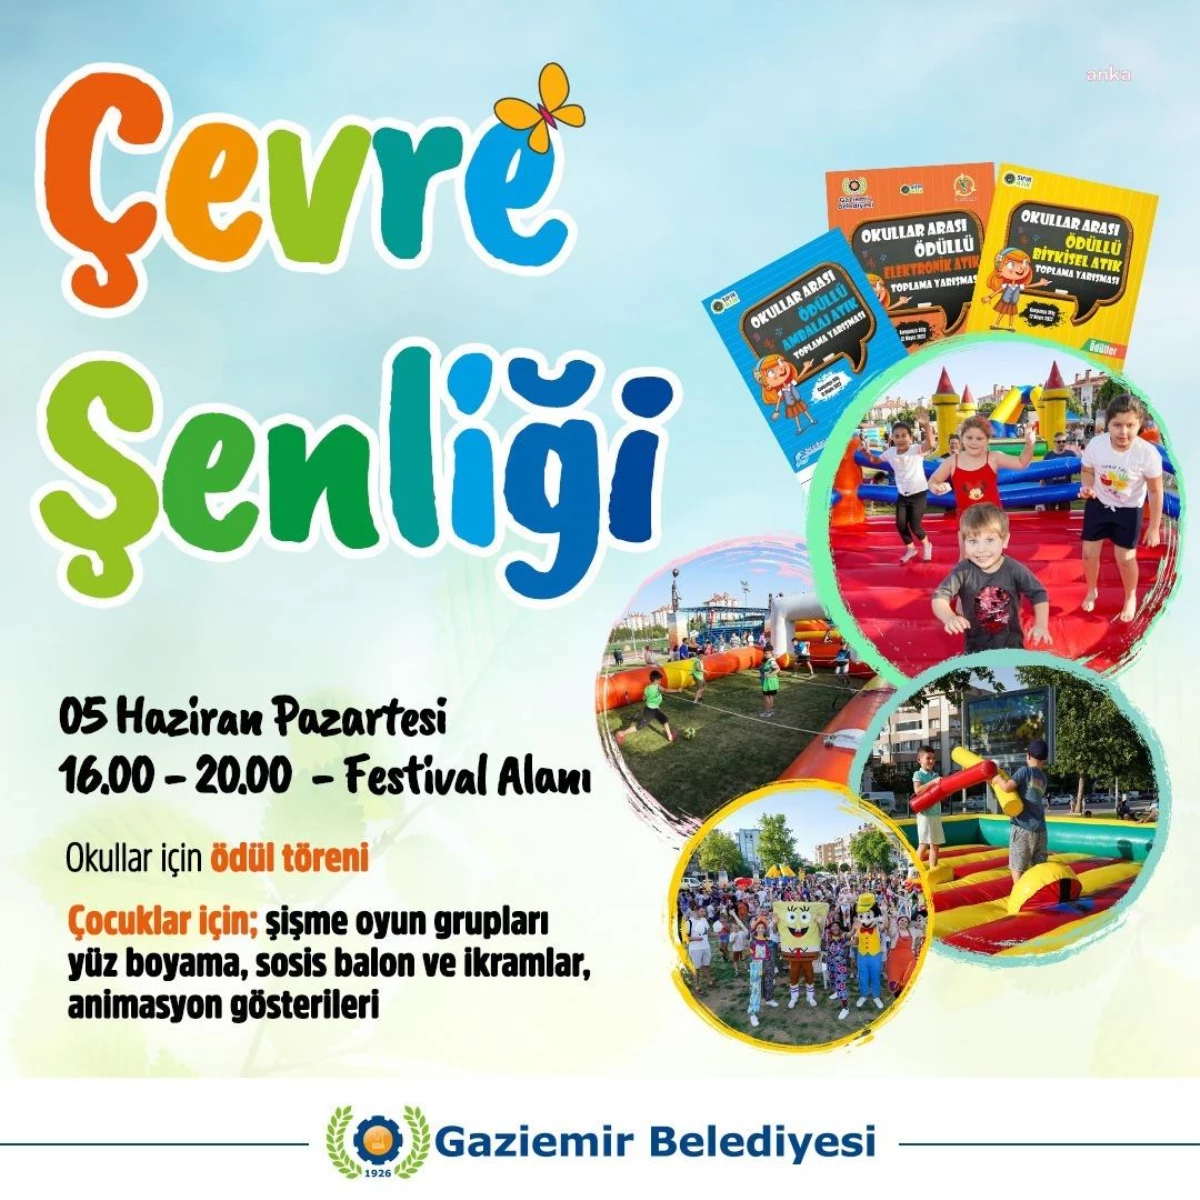 Gaziemir Belediyesi, Dünya Çevre Günü\'nde Çevre Şenliği düzenliyor